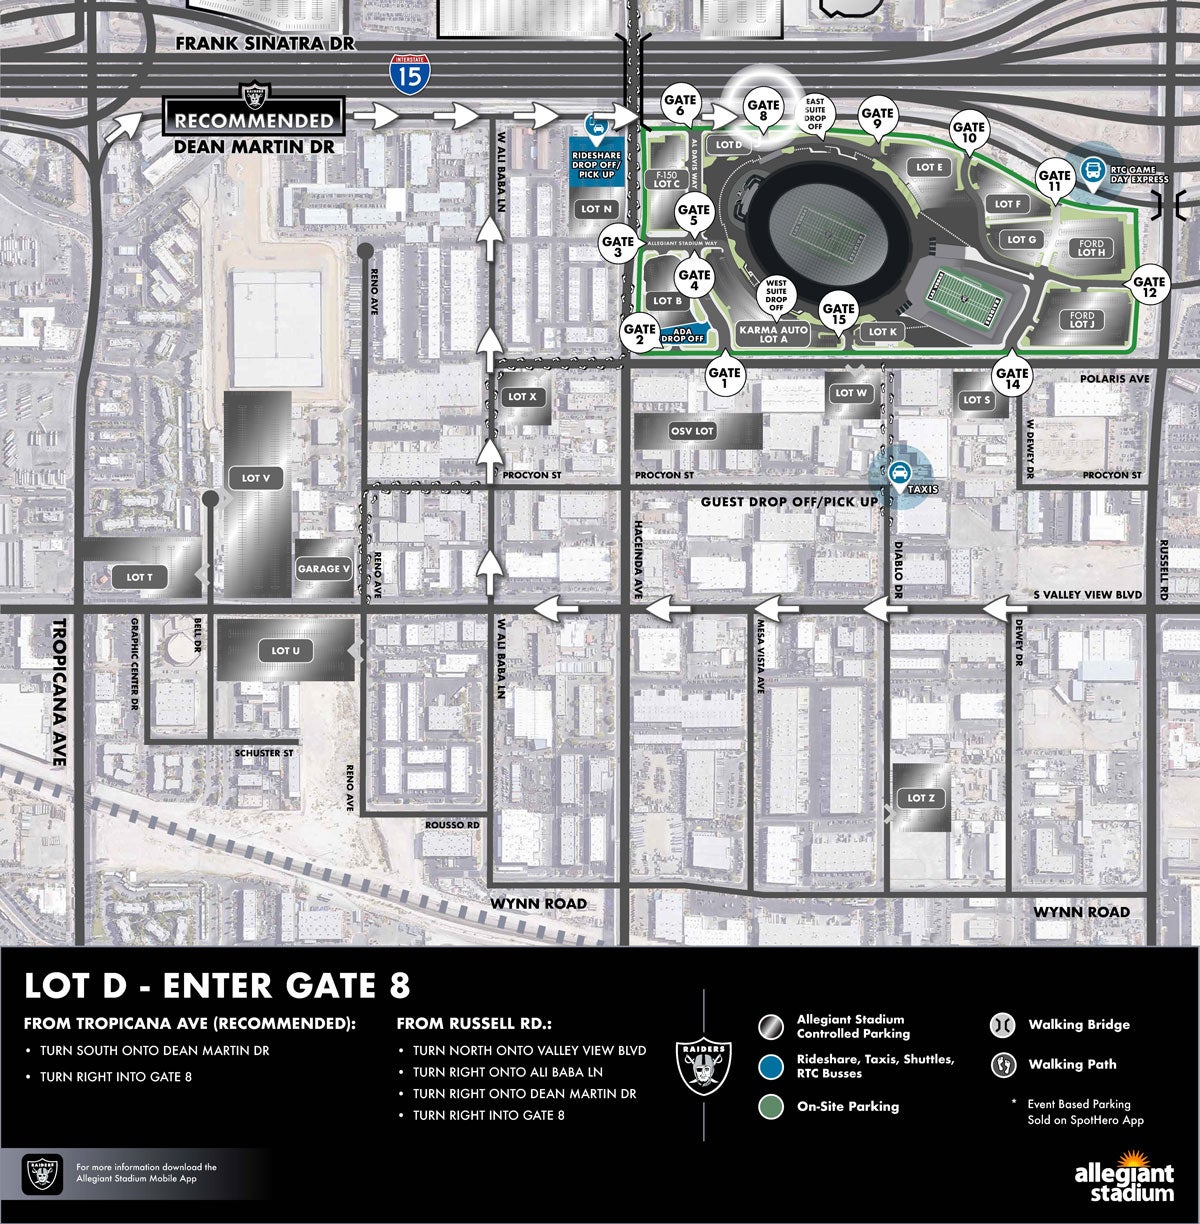 Lot D Parking Map - Enter Gate 8